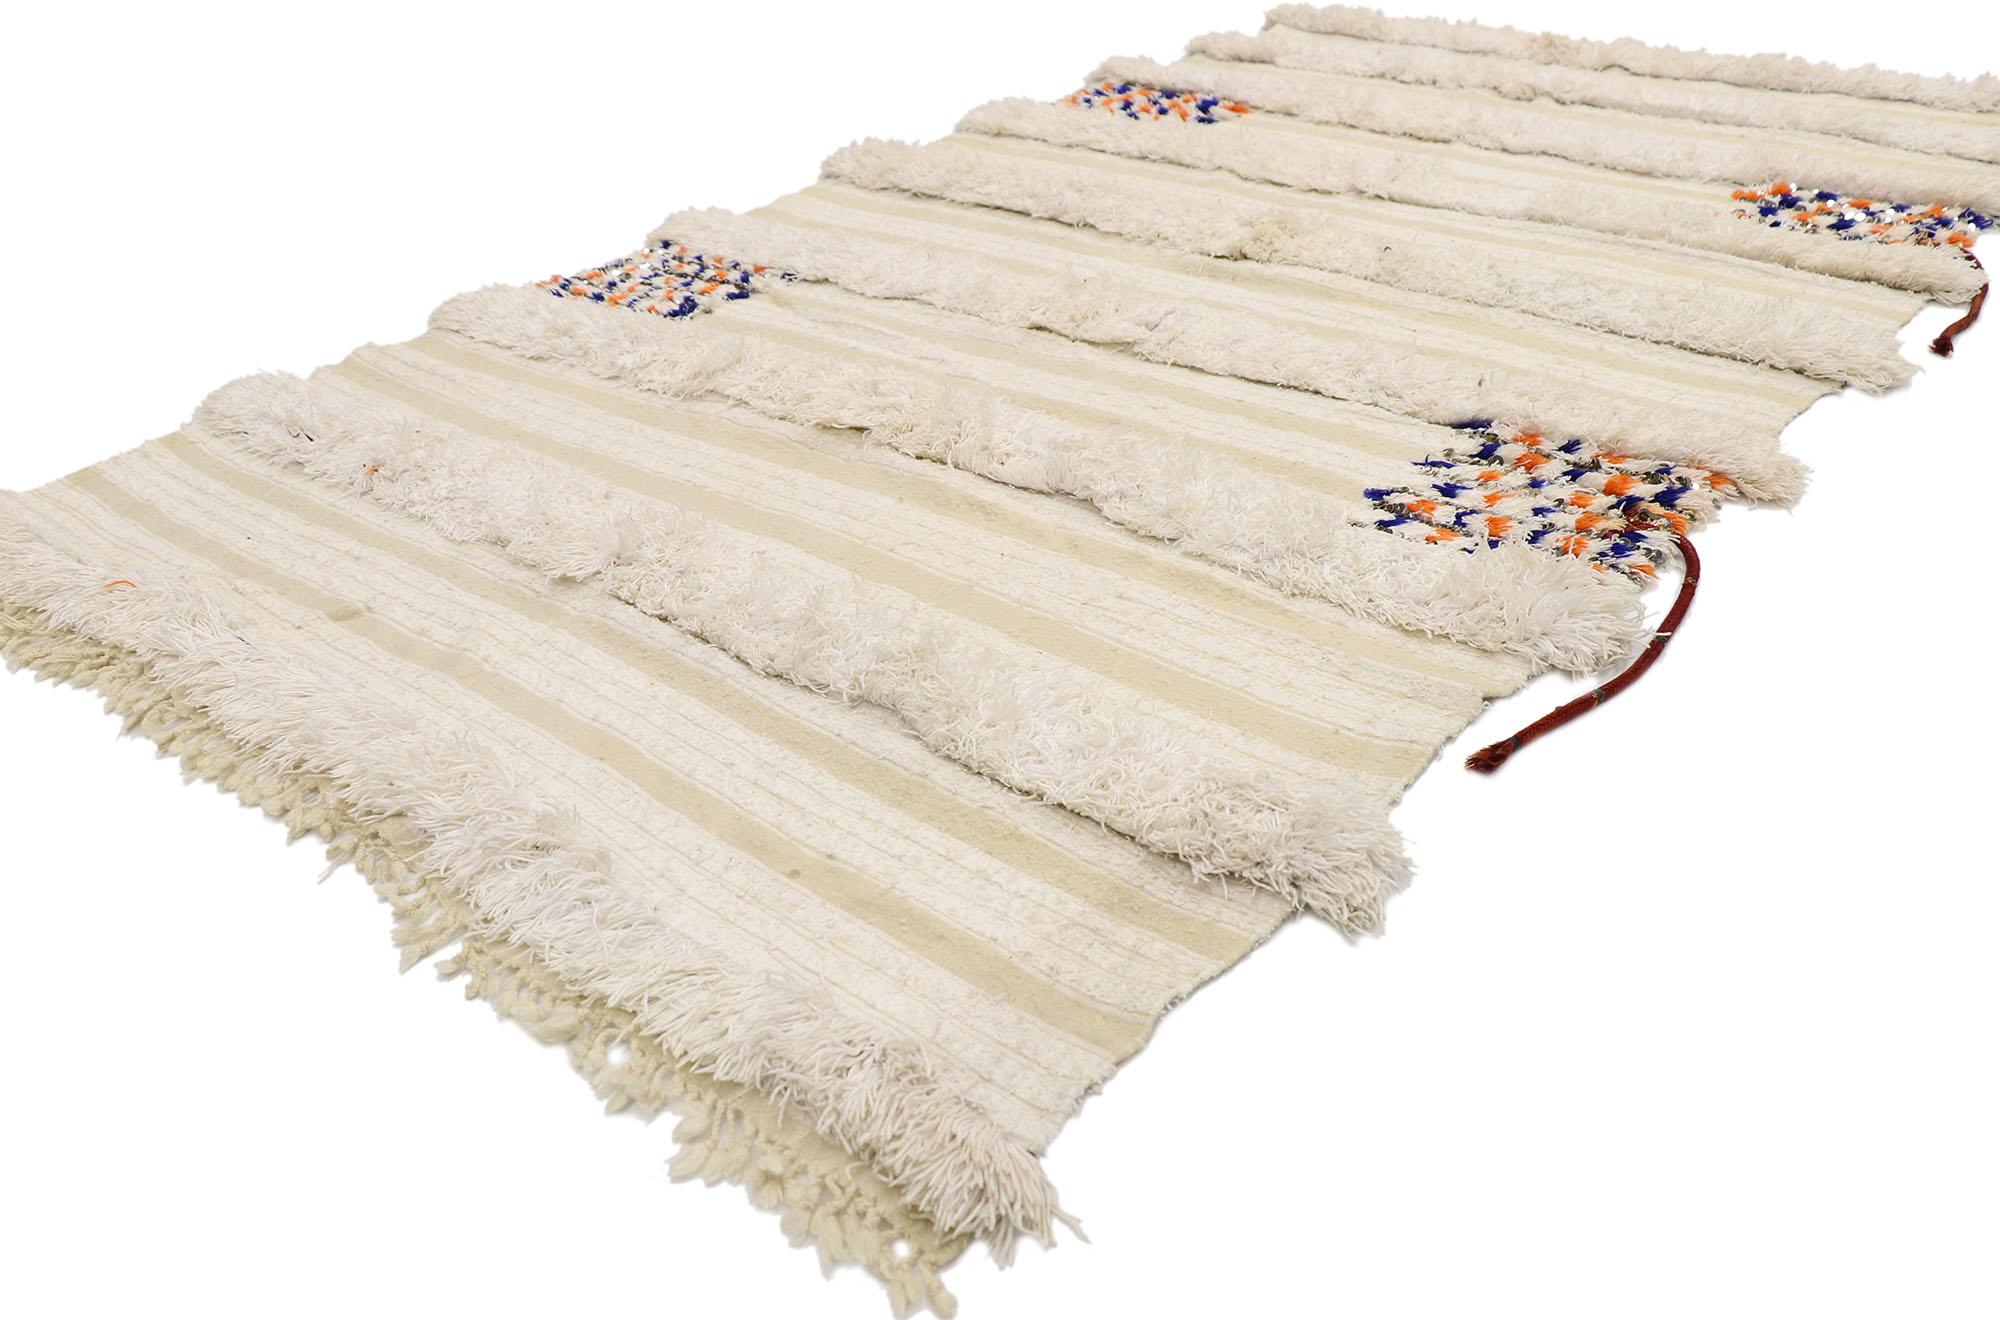 21547 Couverture de mariage marocain vintage avec liens de cap d'origine, 04'00 x 07'06. Cette couverture de mariage marocaine vintage en laine tissée à la main, également connue sous le nom de Tamizart Handira berbère, présente des rangées de